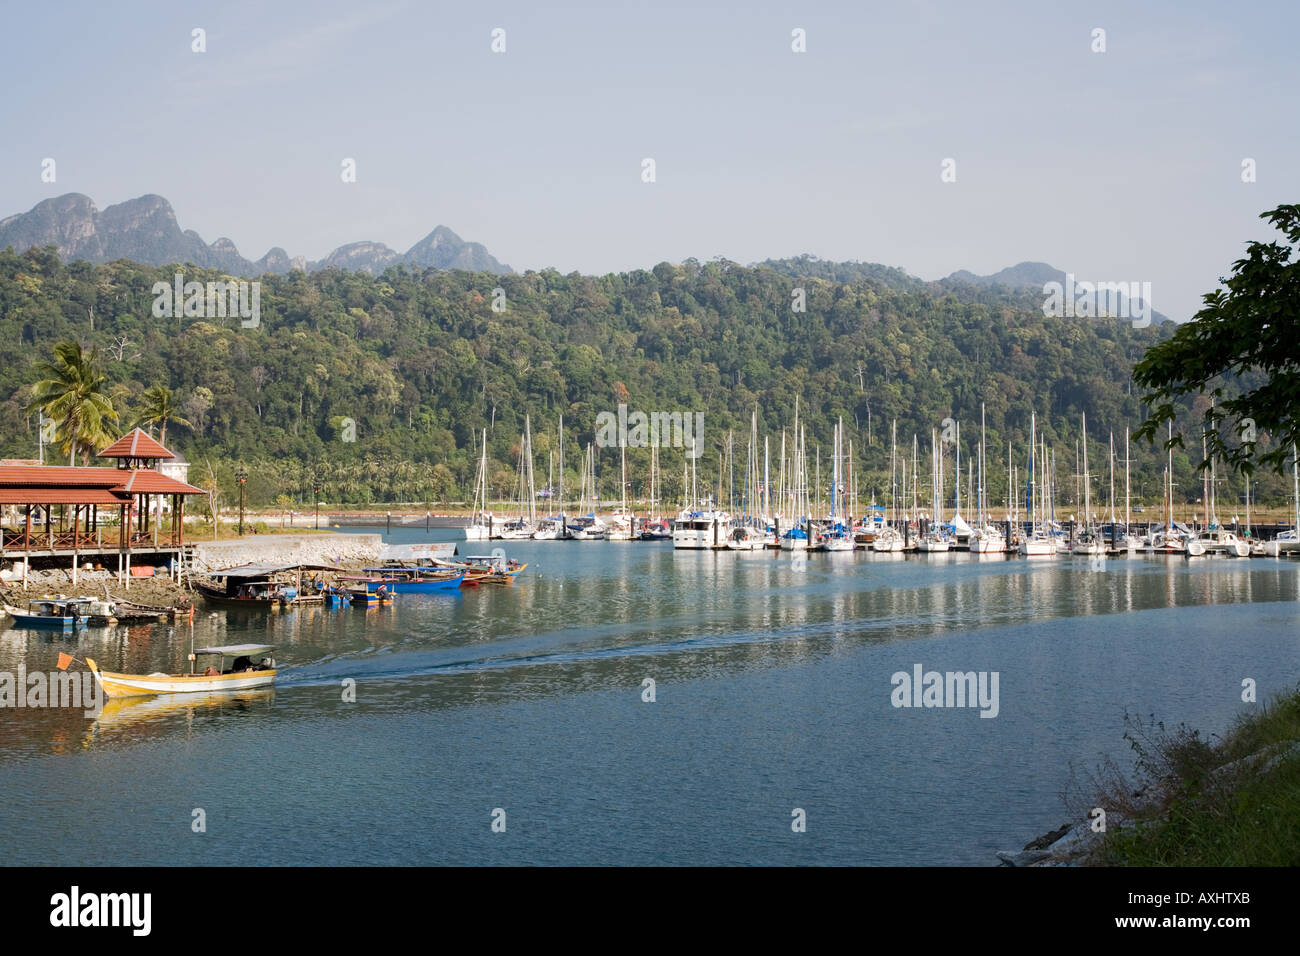 Bateau de Moteur Petronas laissant quai, port de Telaga Park, l'île de Langkawi, yachts avec en arrière-plan. Pulau Langkawi, Malaisie Banque D'Images